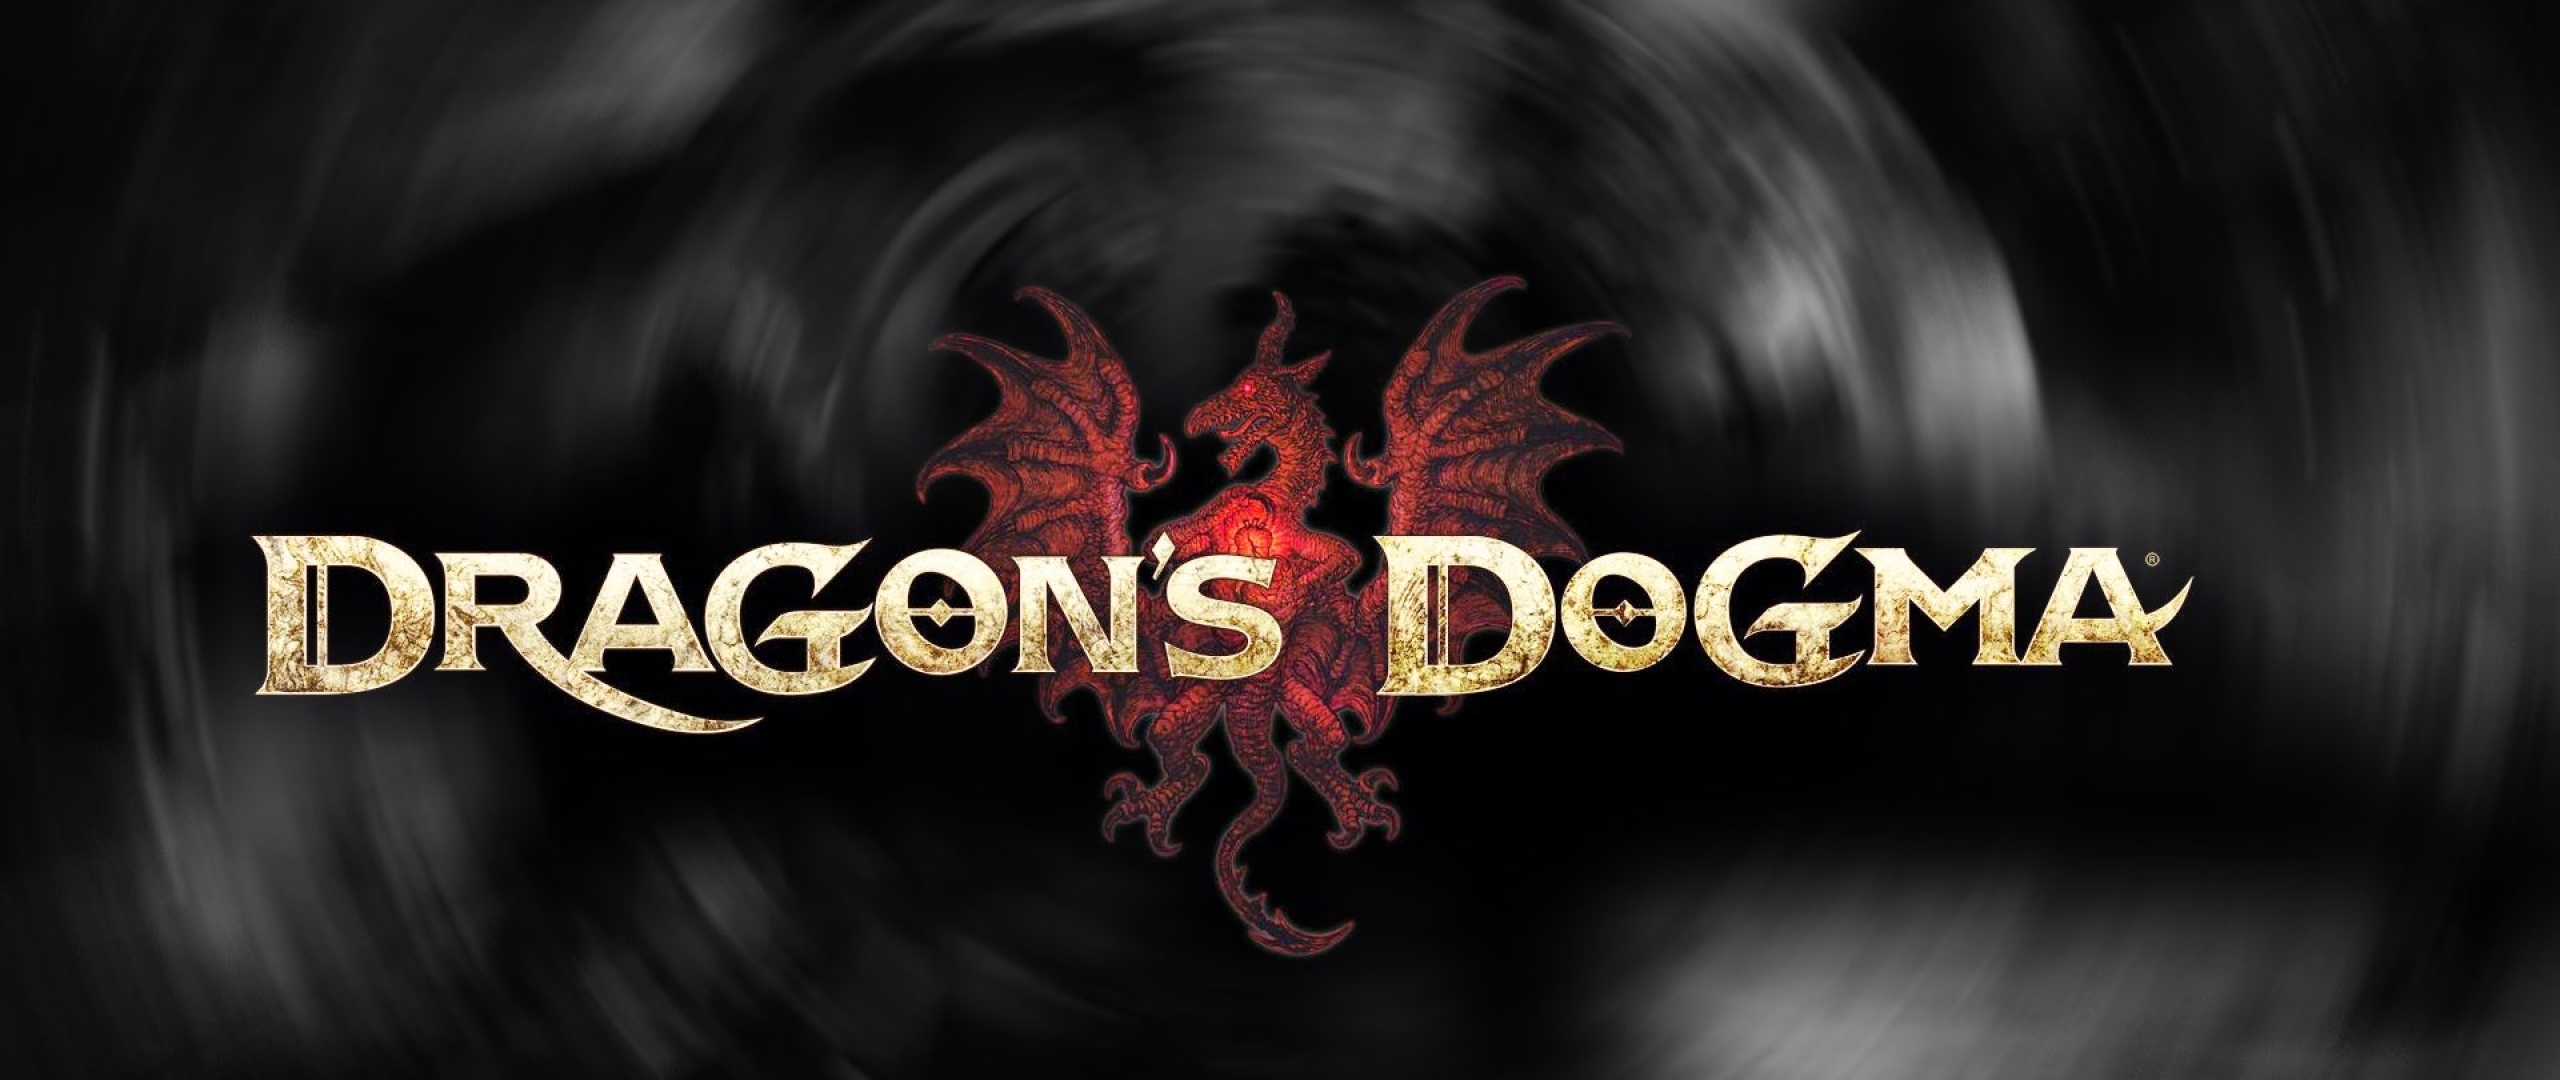 Dragon's Dogma 2 обои. Dragon Dogma 2 Wallpapers. Dragon's Dogma Chaos. Dragons Dogma 2 Demo.